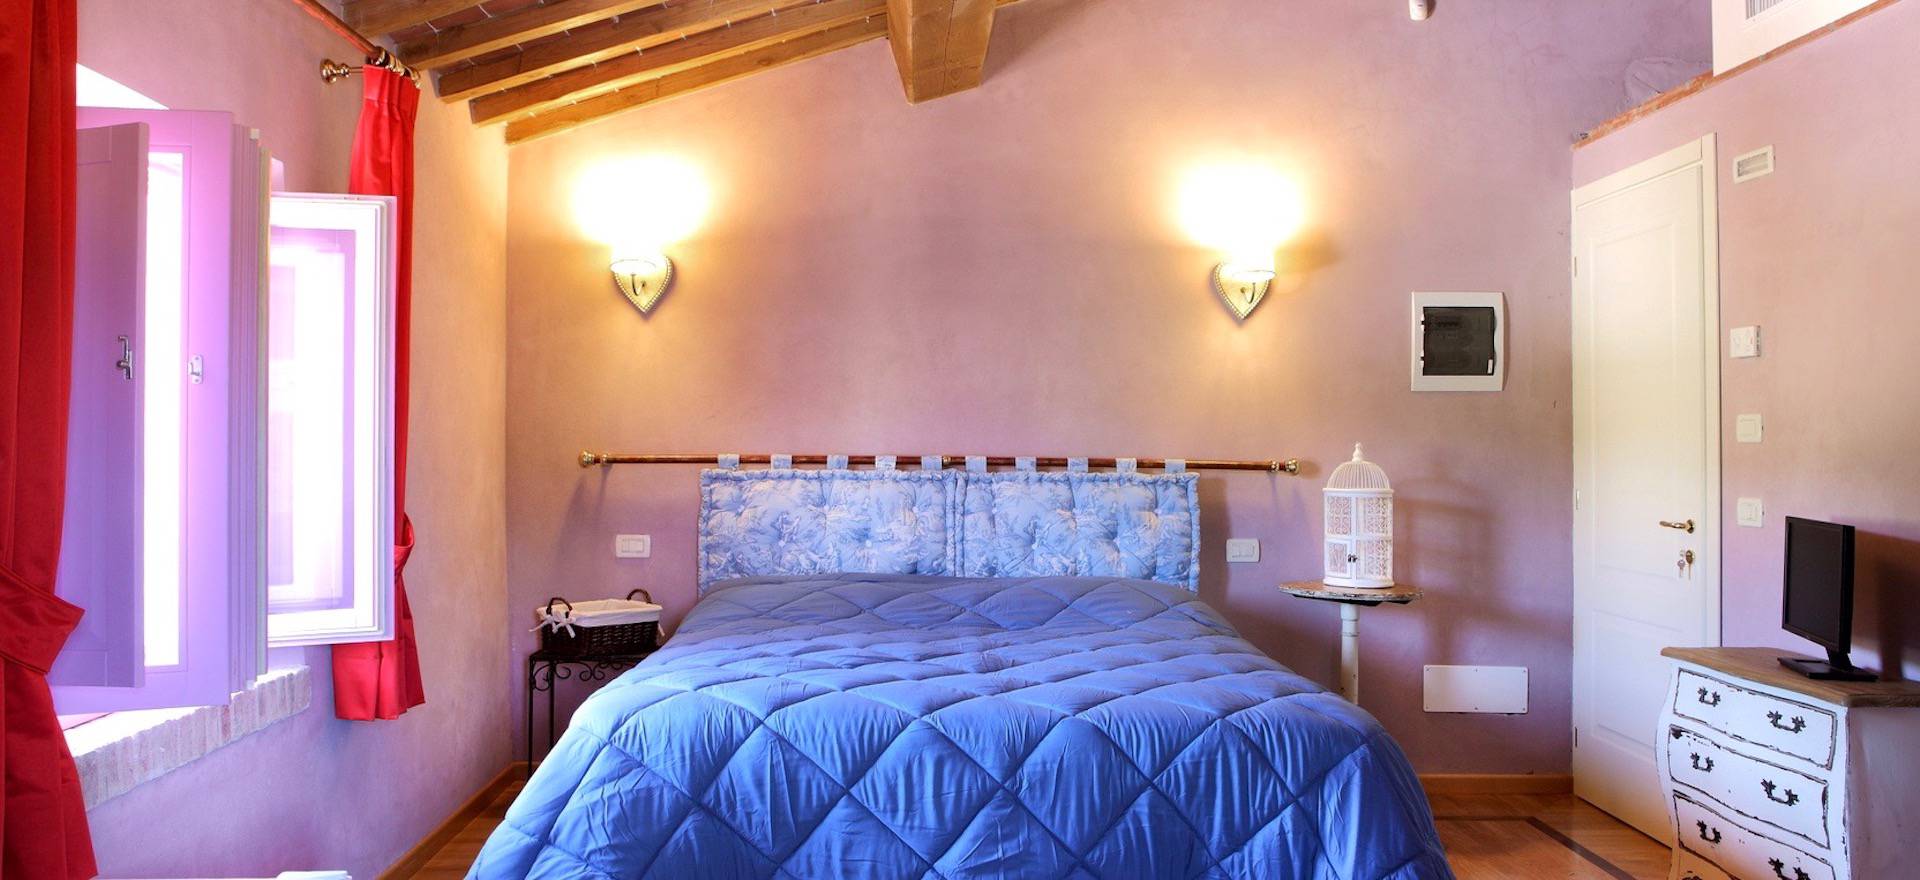 Zeer sfeervolle kamers in een agriturismo in Toscane